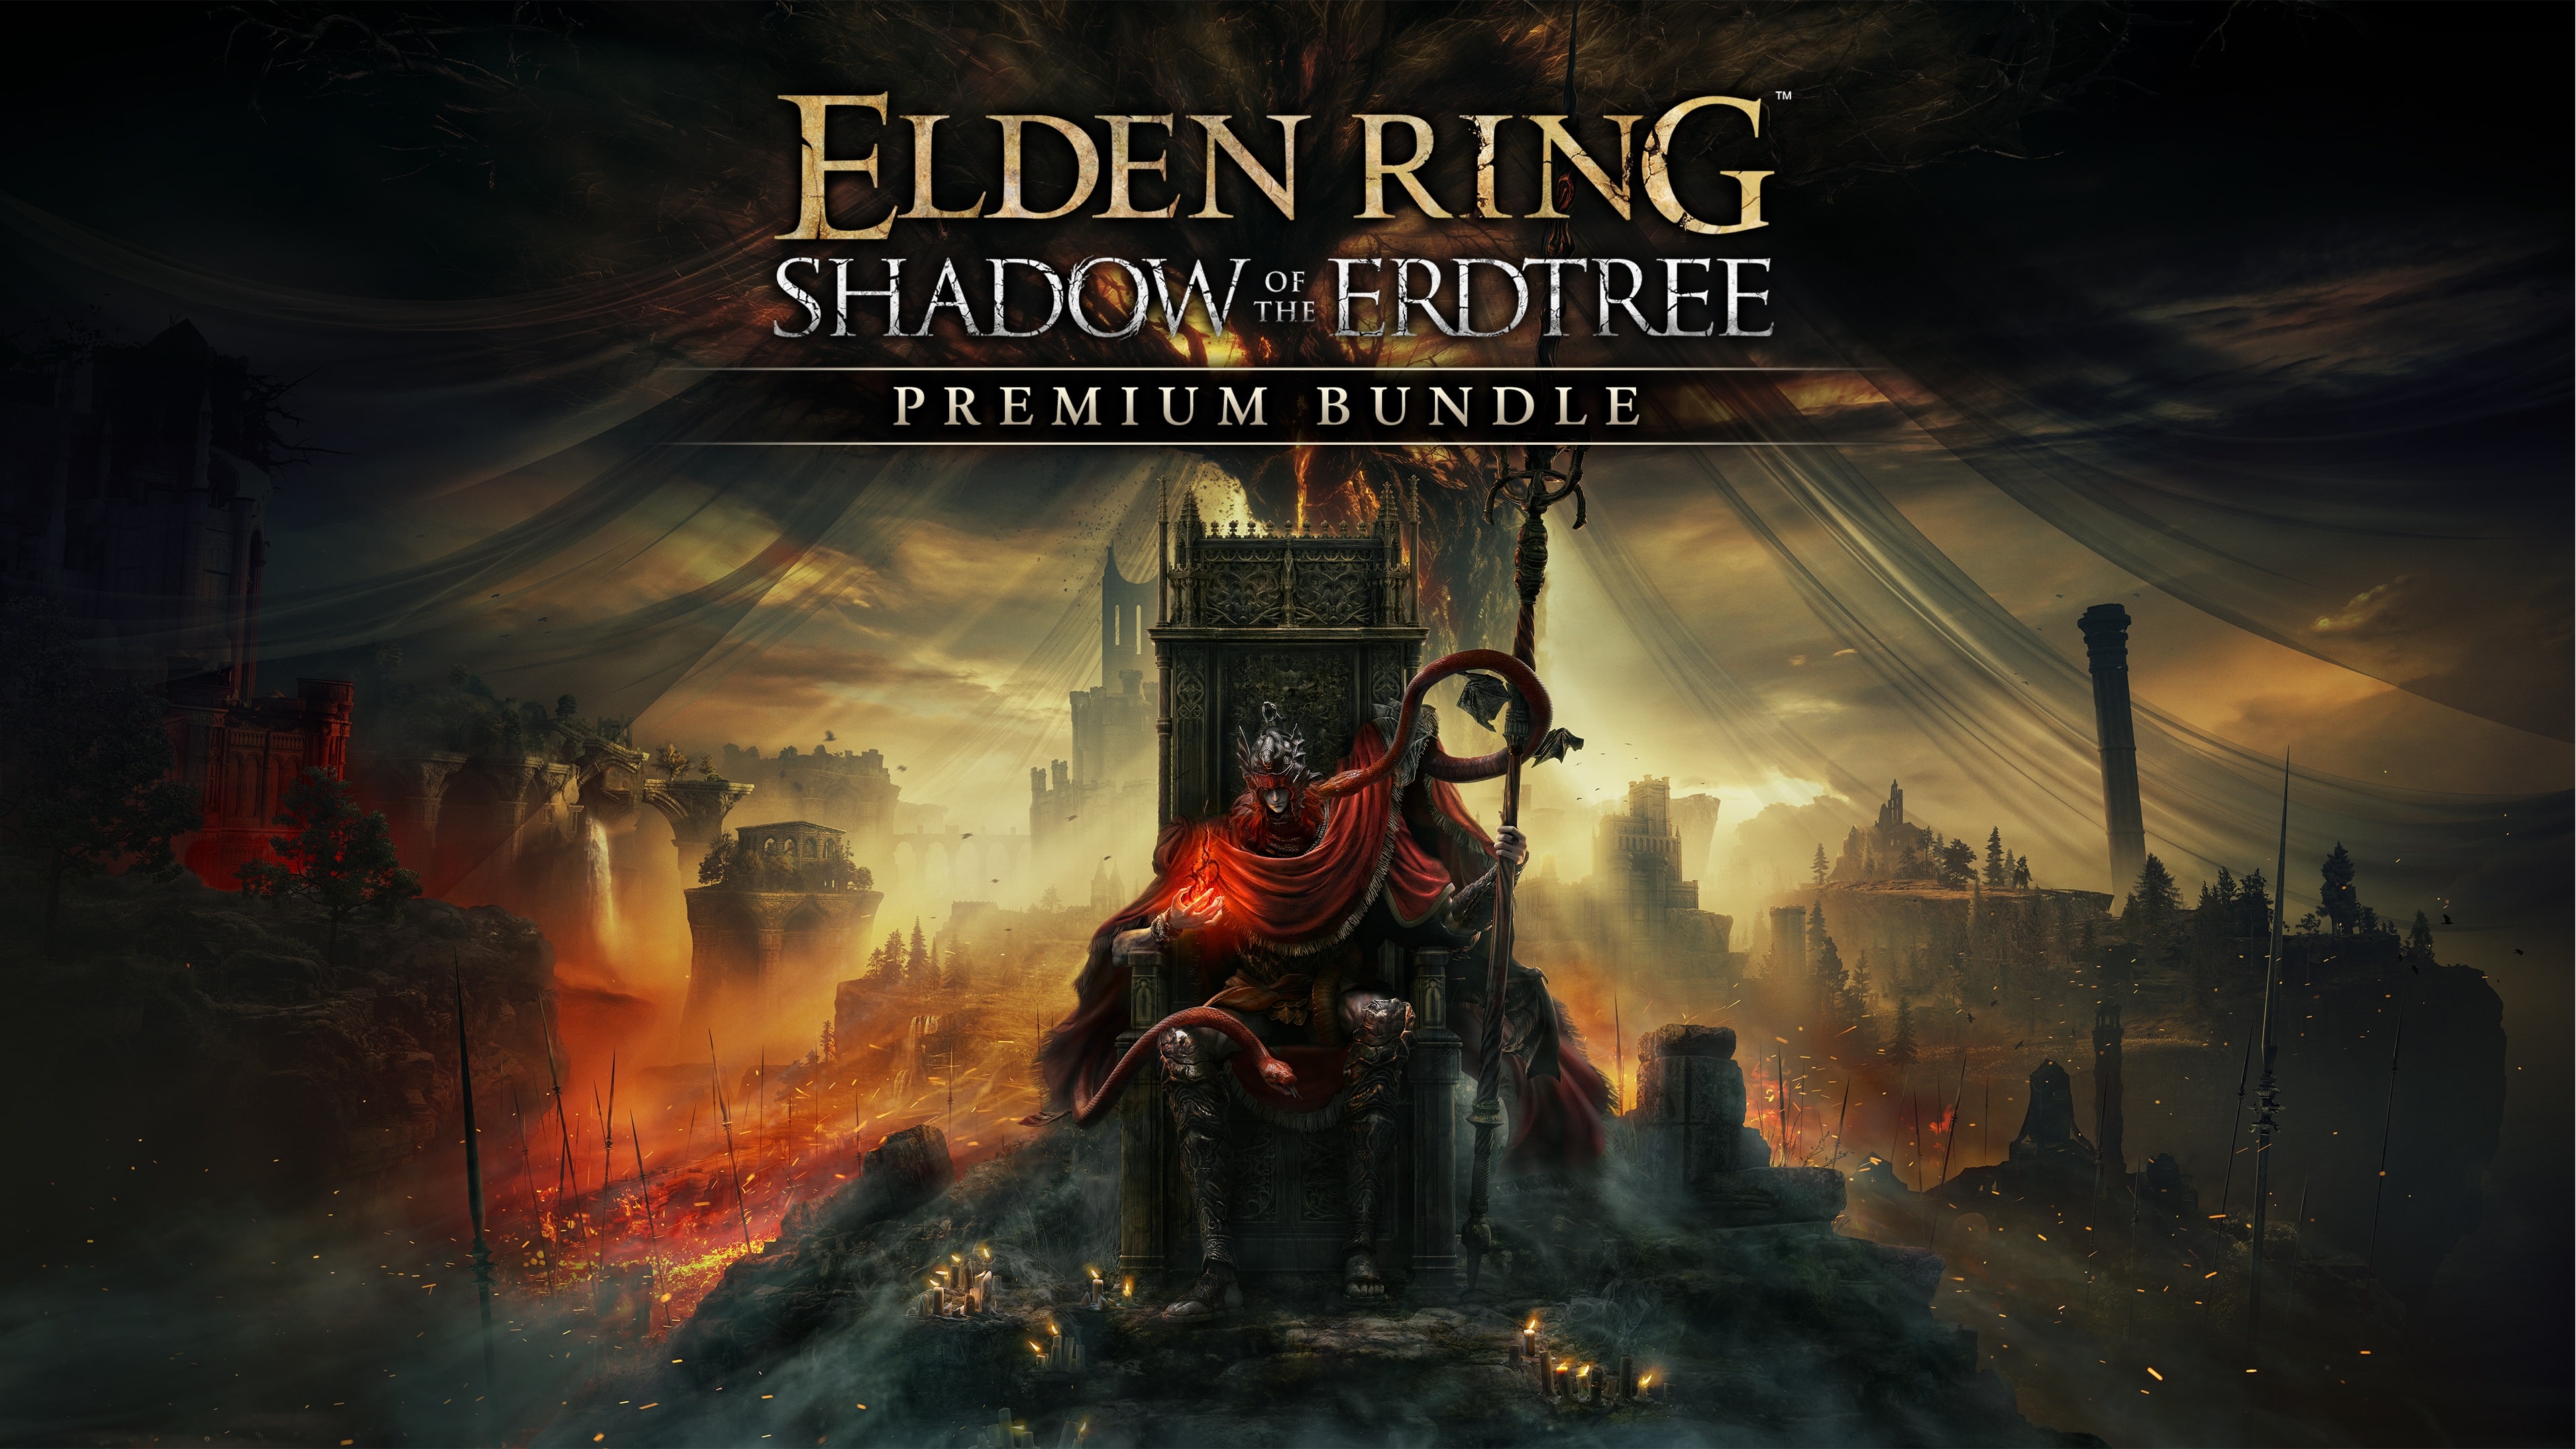 ELDEN RING Shadow of the Erdtree Premium Bundle PS4 & PS5